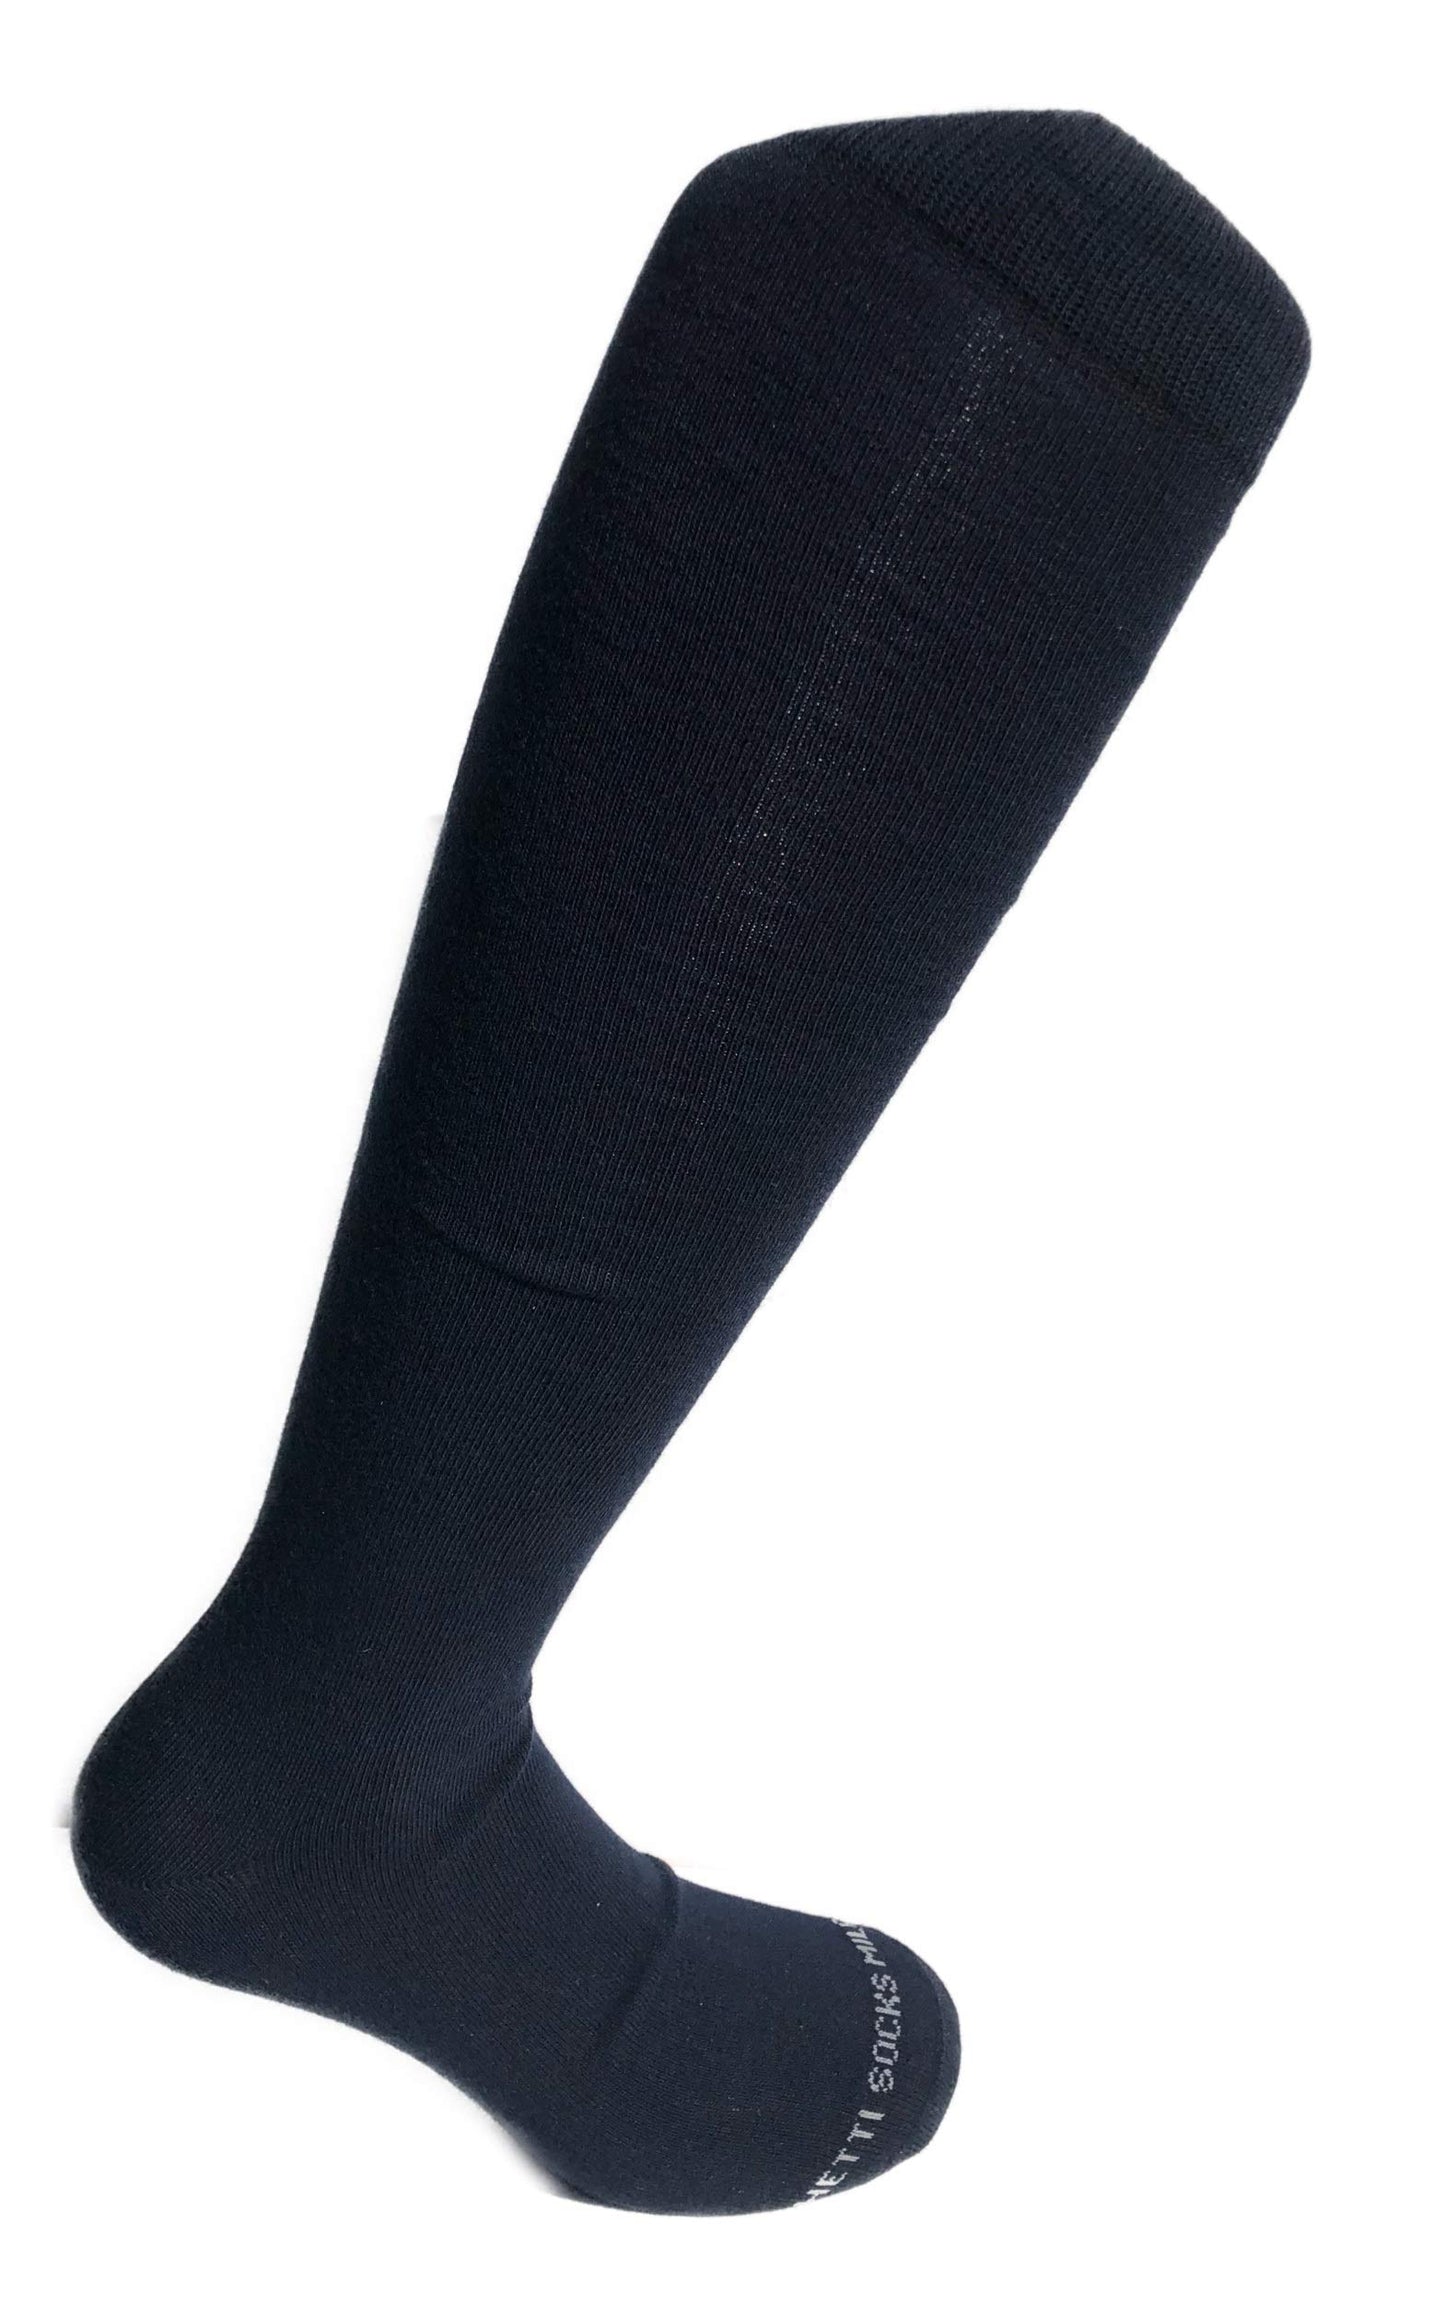 Lucchetti Socks Milano 6 PAIA di calze calzini UOMO LUNGHE caldo cotone ELASTICIZZATE,100% Made in Italy